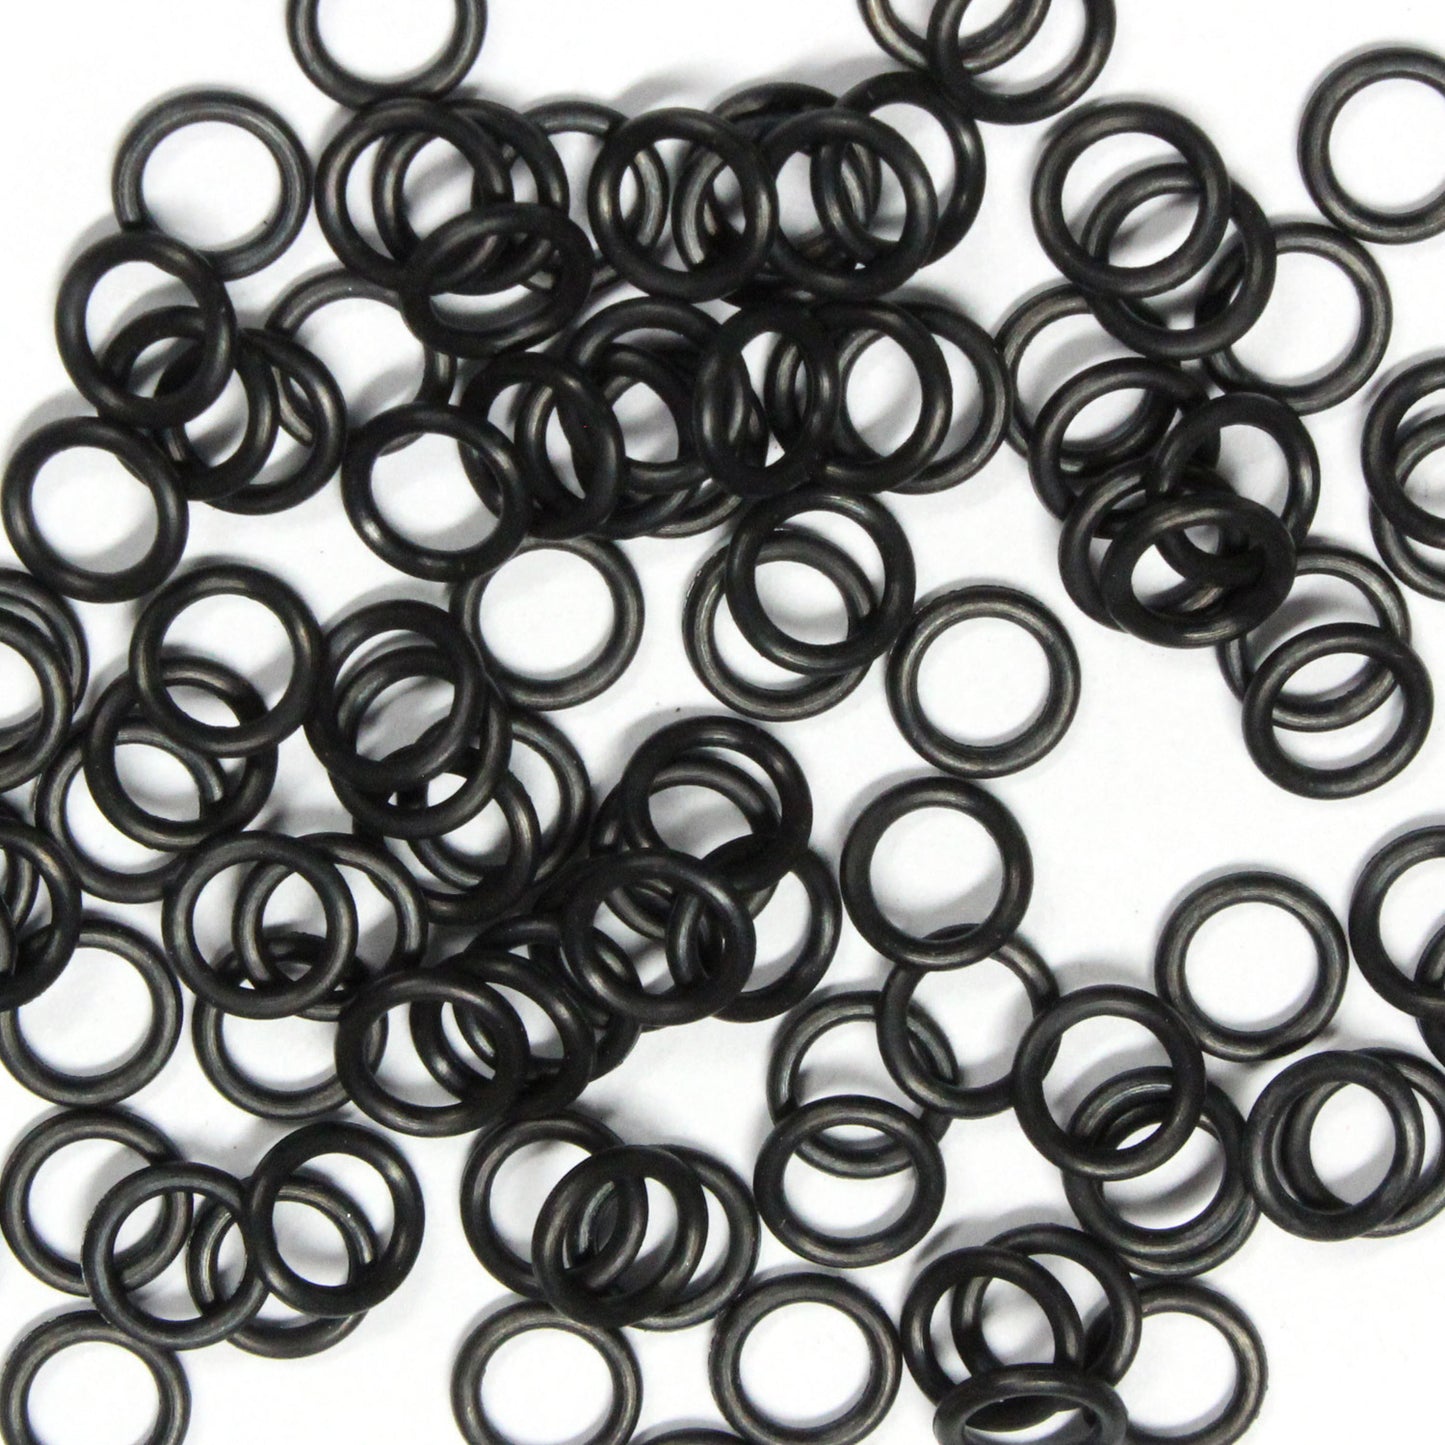 BLACK 5mm Rubber Rings / 100 Pack / 16 Gauge AWG / latex free